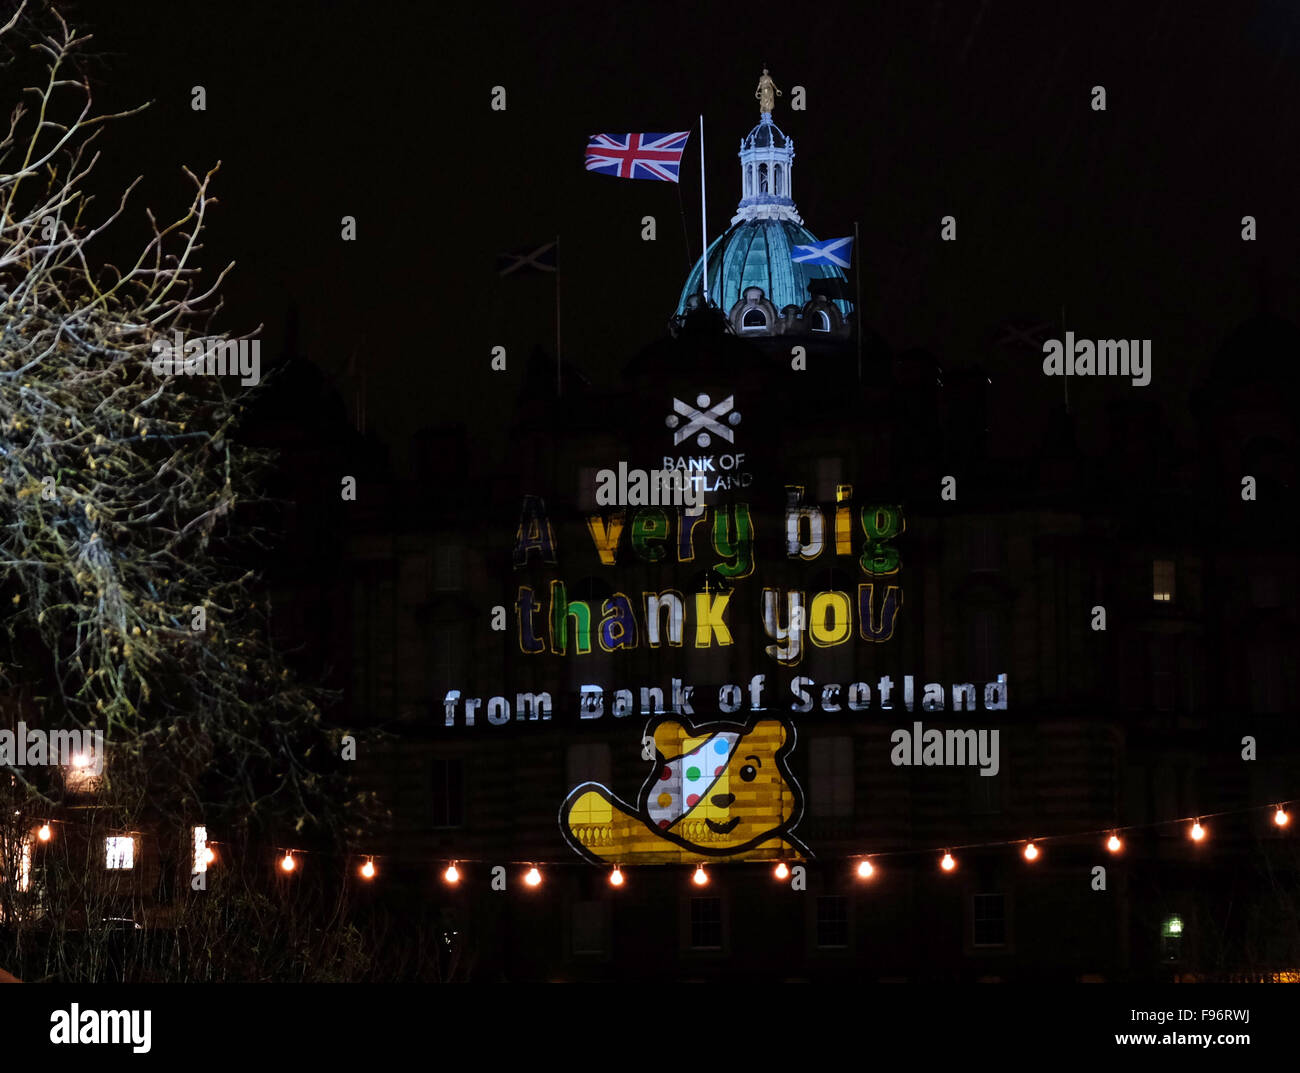 Children In Need, Edinburgh, Freitag, 13. November 2015 der Bank of Scotland historischen Hauptsitz auf The Mound wurde erleuchtet heute Abend mit einem spektakulären Laser-Projektion feiert Bank of Scotland wichtigste Partnerschaft mit BBC Kinder in Not Stockfoto